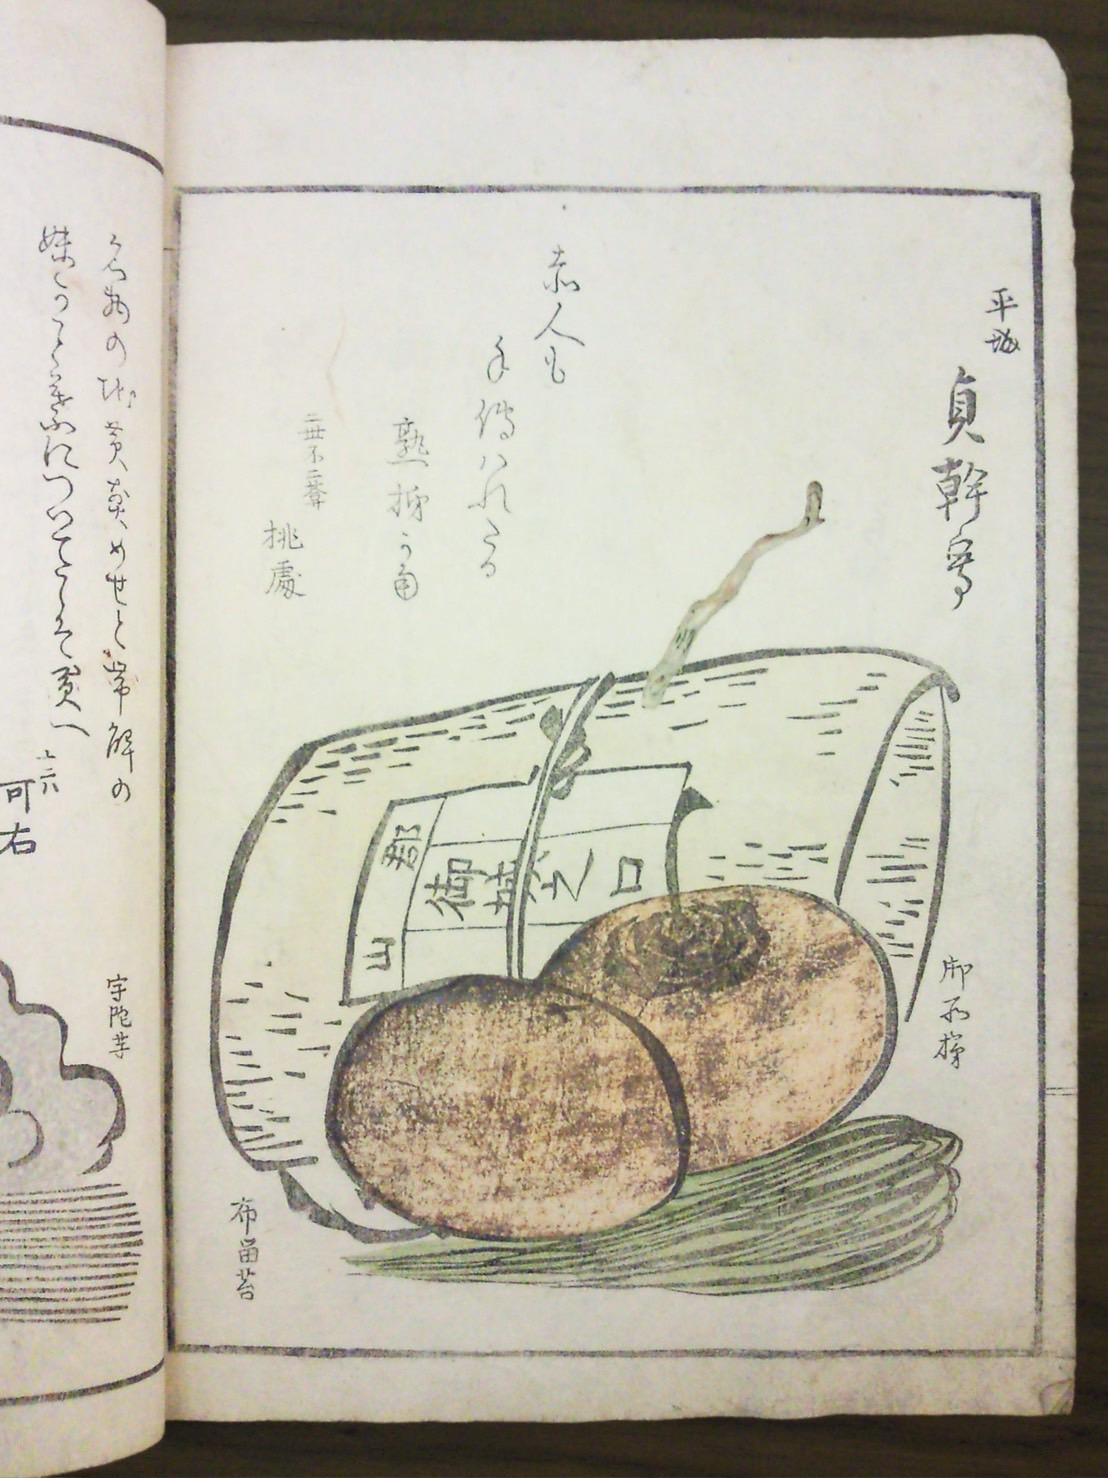 豐臣秀吉賜名的鶯餅（御城之口餅），是奈良的代表銘菓。